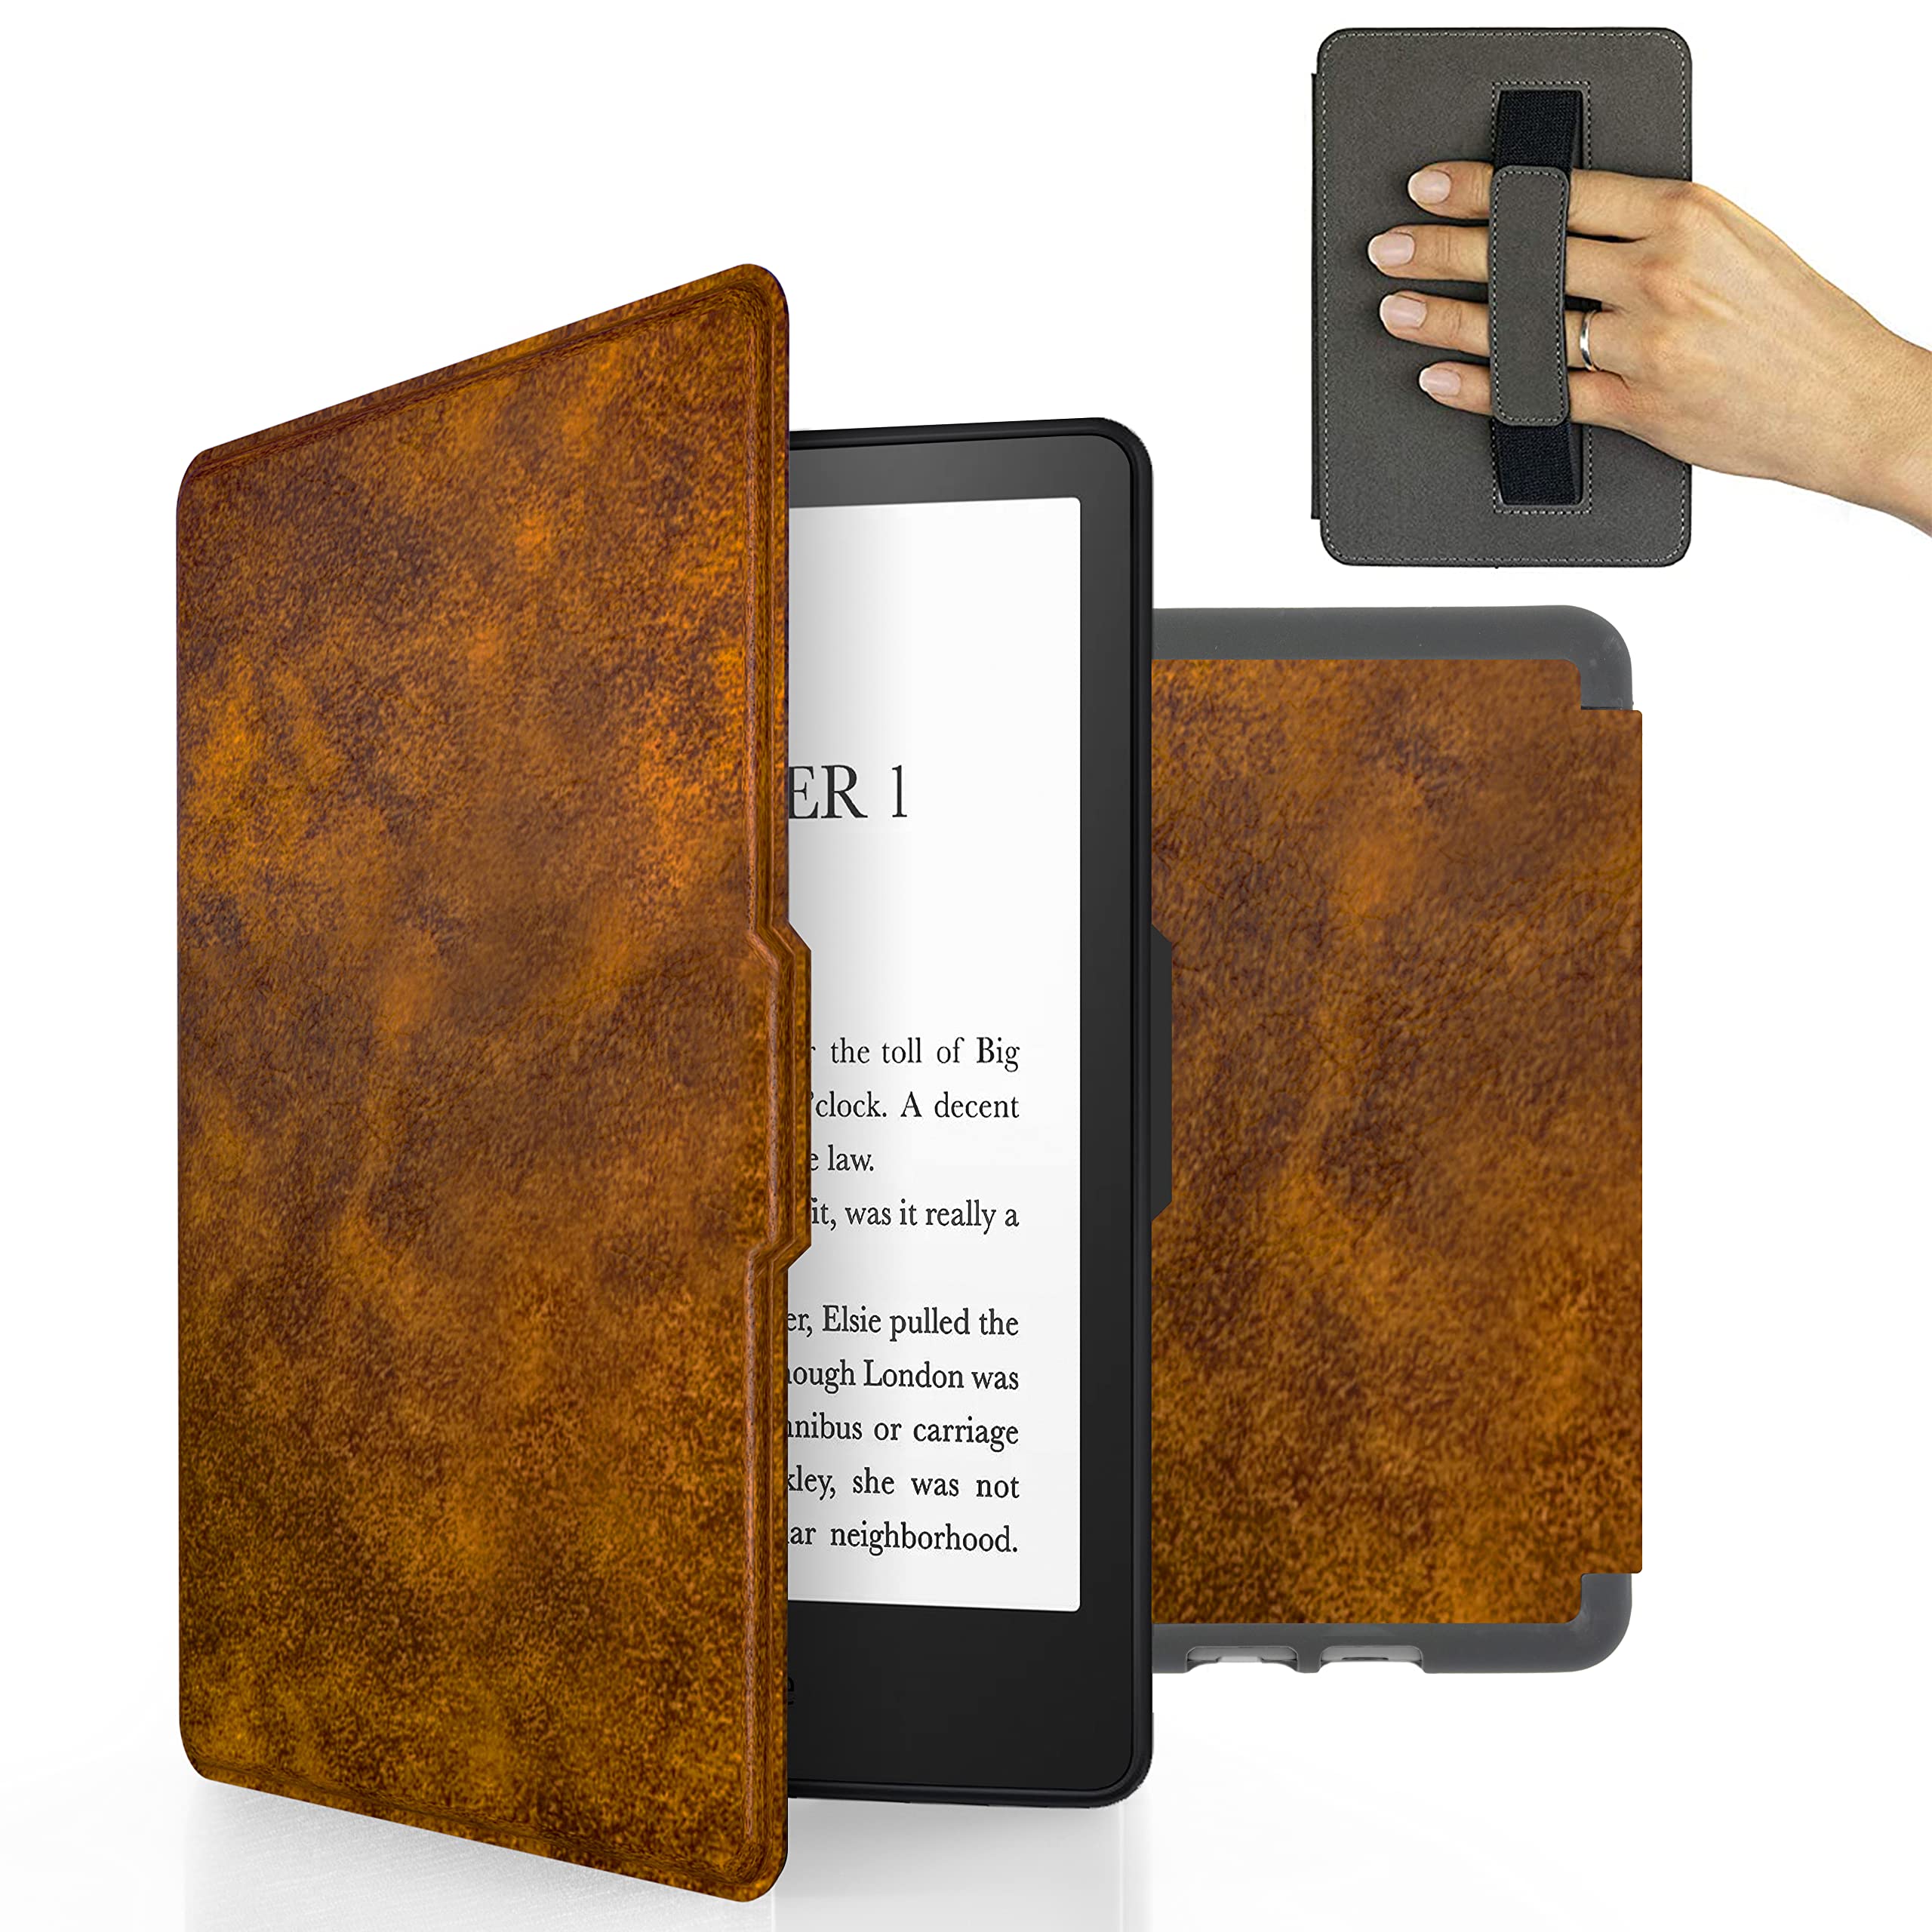 MyGadget Kunstleder Hülle für Amazon Kindle Paperwhite 7. Generation (bis 2017-6 Zoll) mit Handschlaufe & Auto Sleep | Wake Funktion in Braun